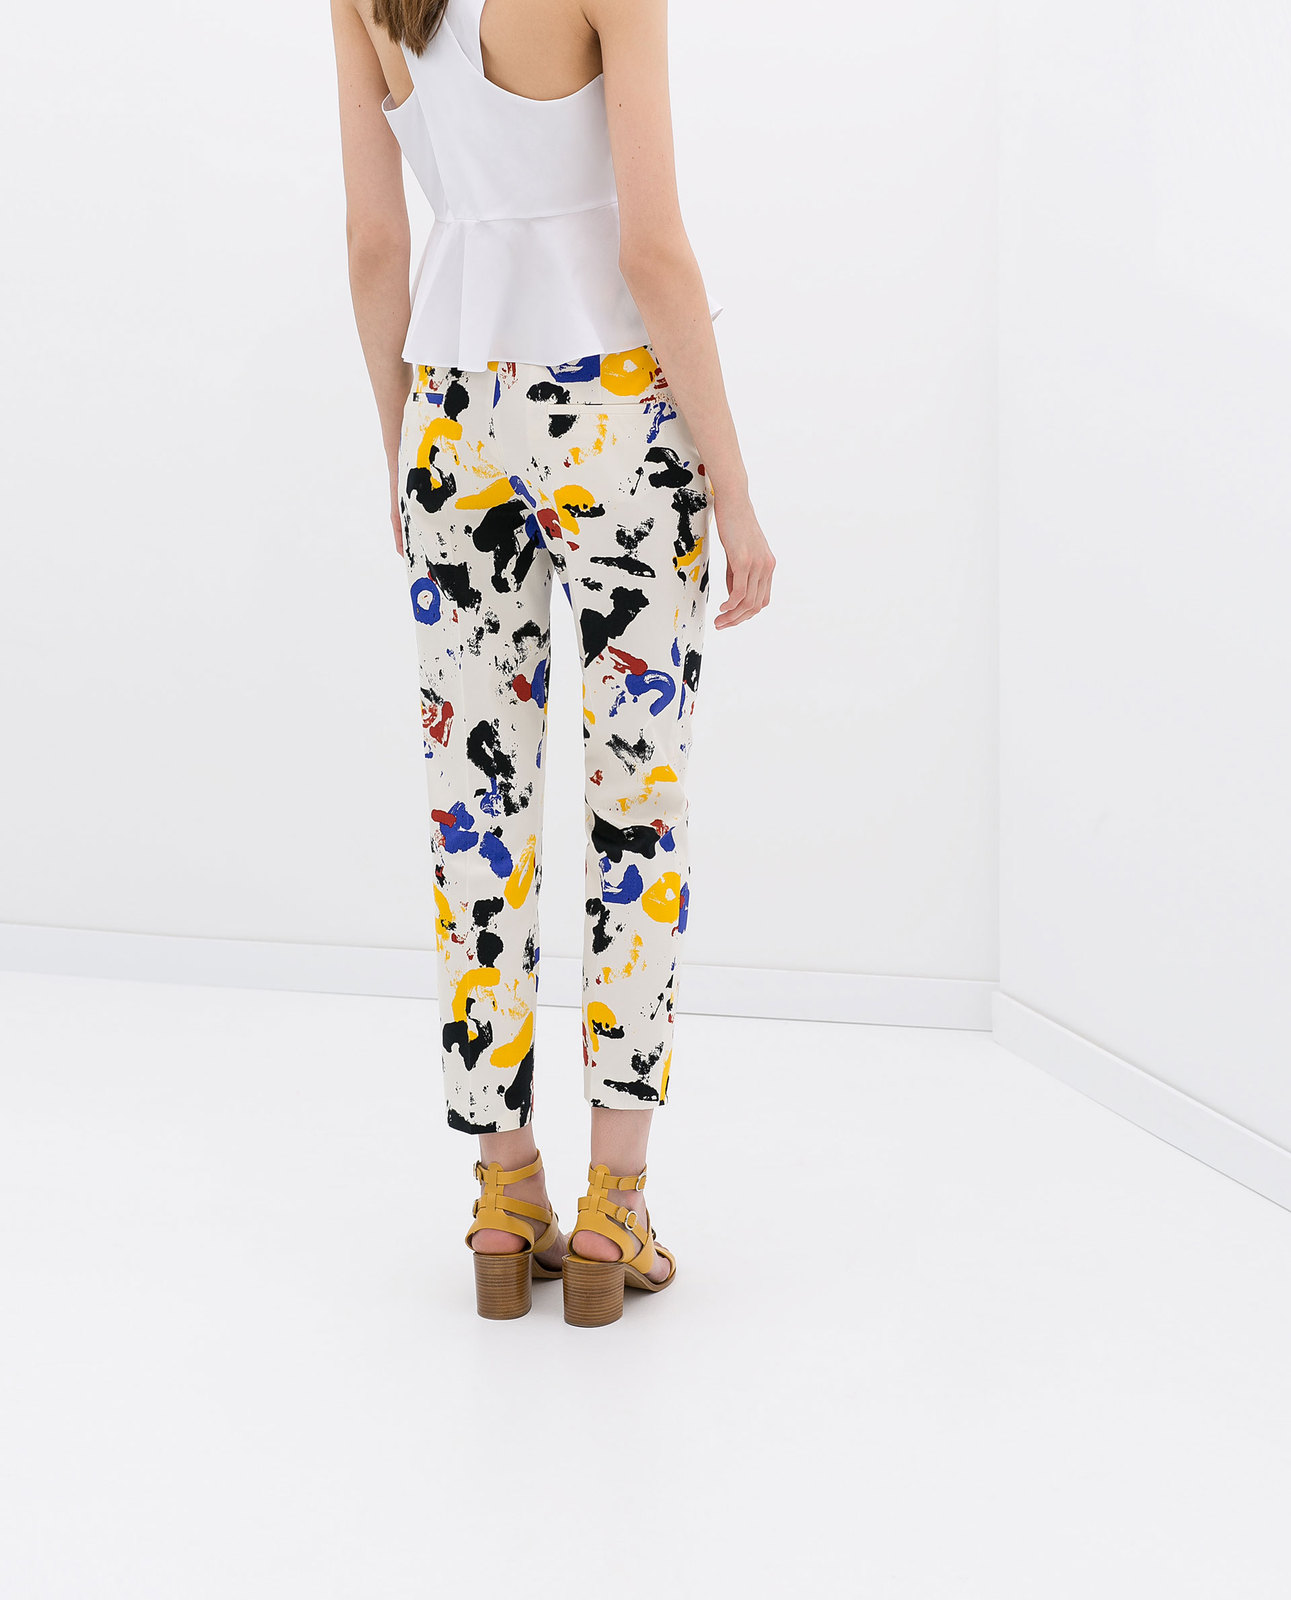 Zara festékmintás színes nadrág 2014.4.15 #56470 fotója